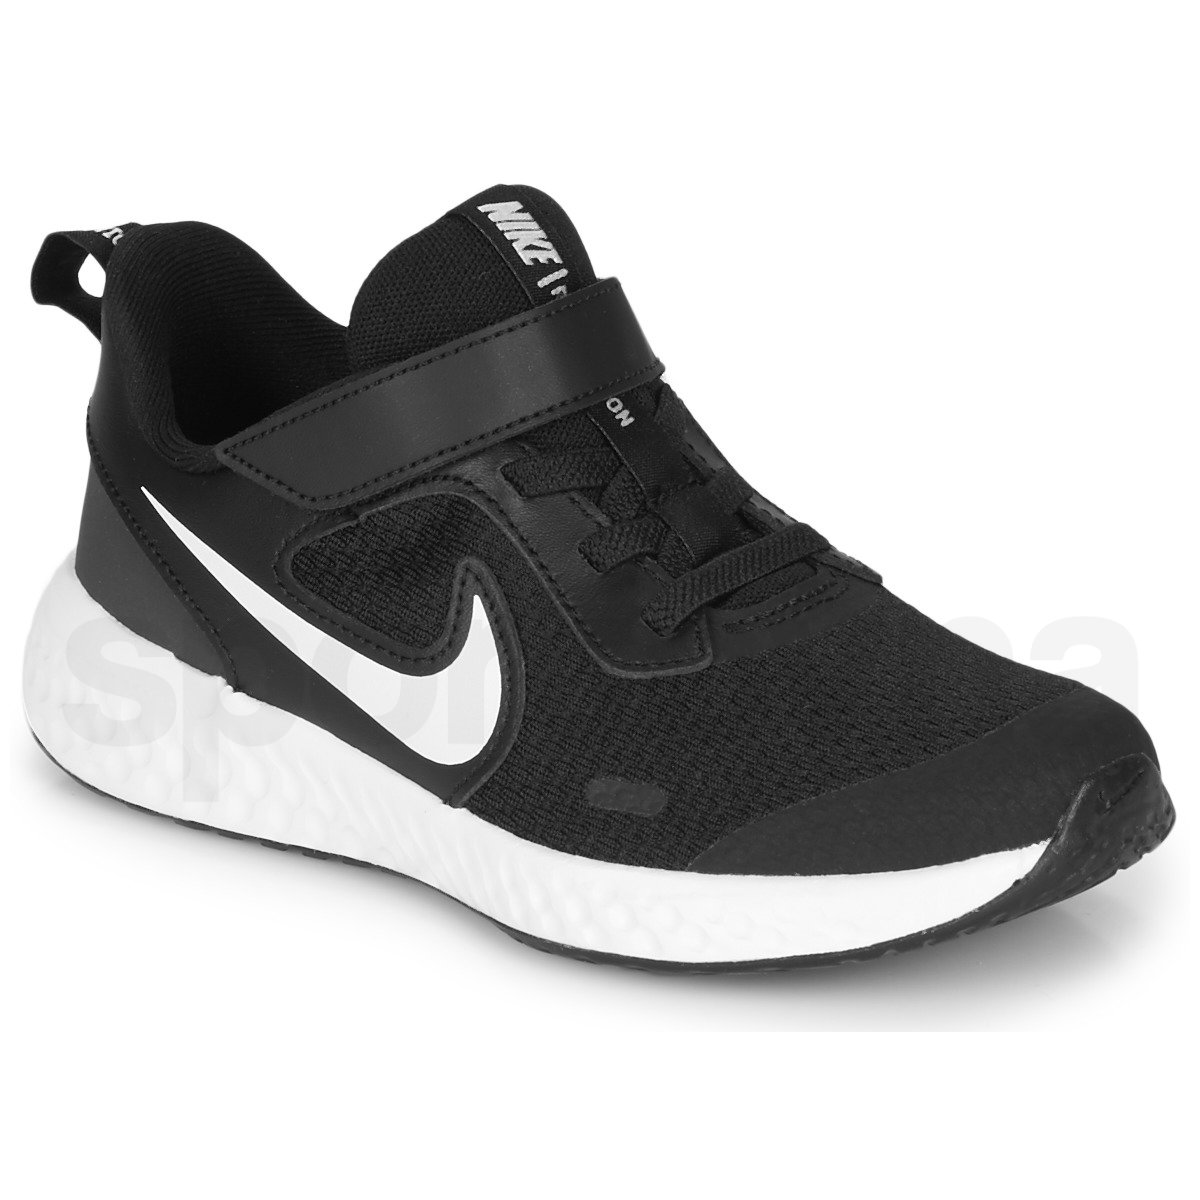 Obuv Nike Revolution 5 - černá/bílá